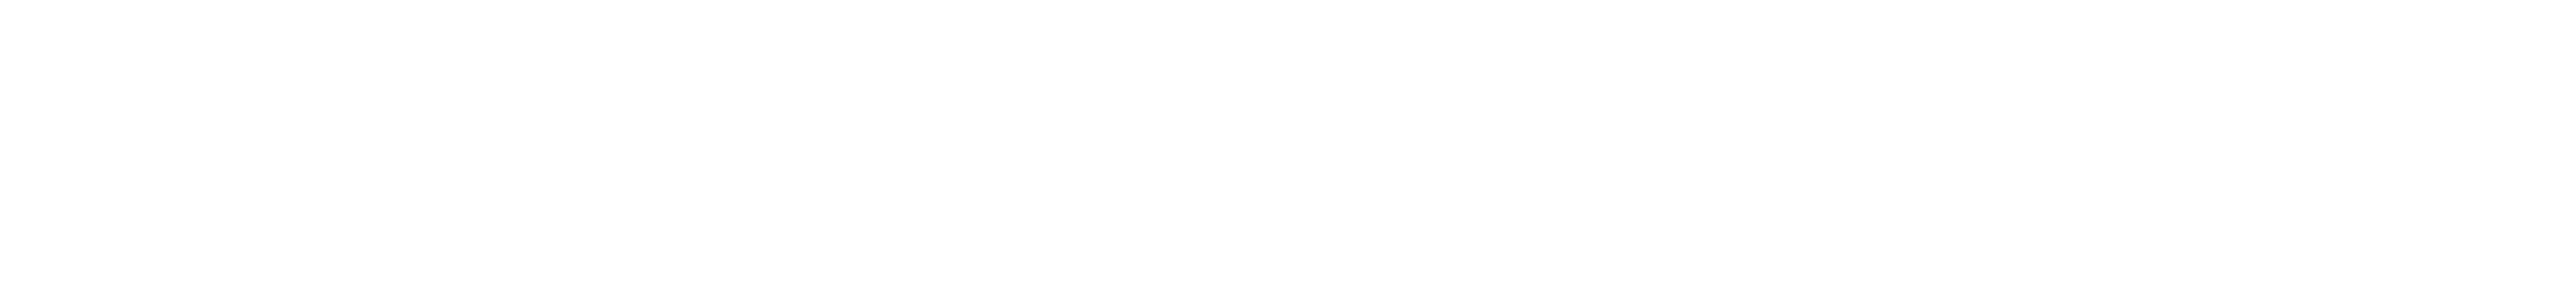 gabriela-logo-tipografico-